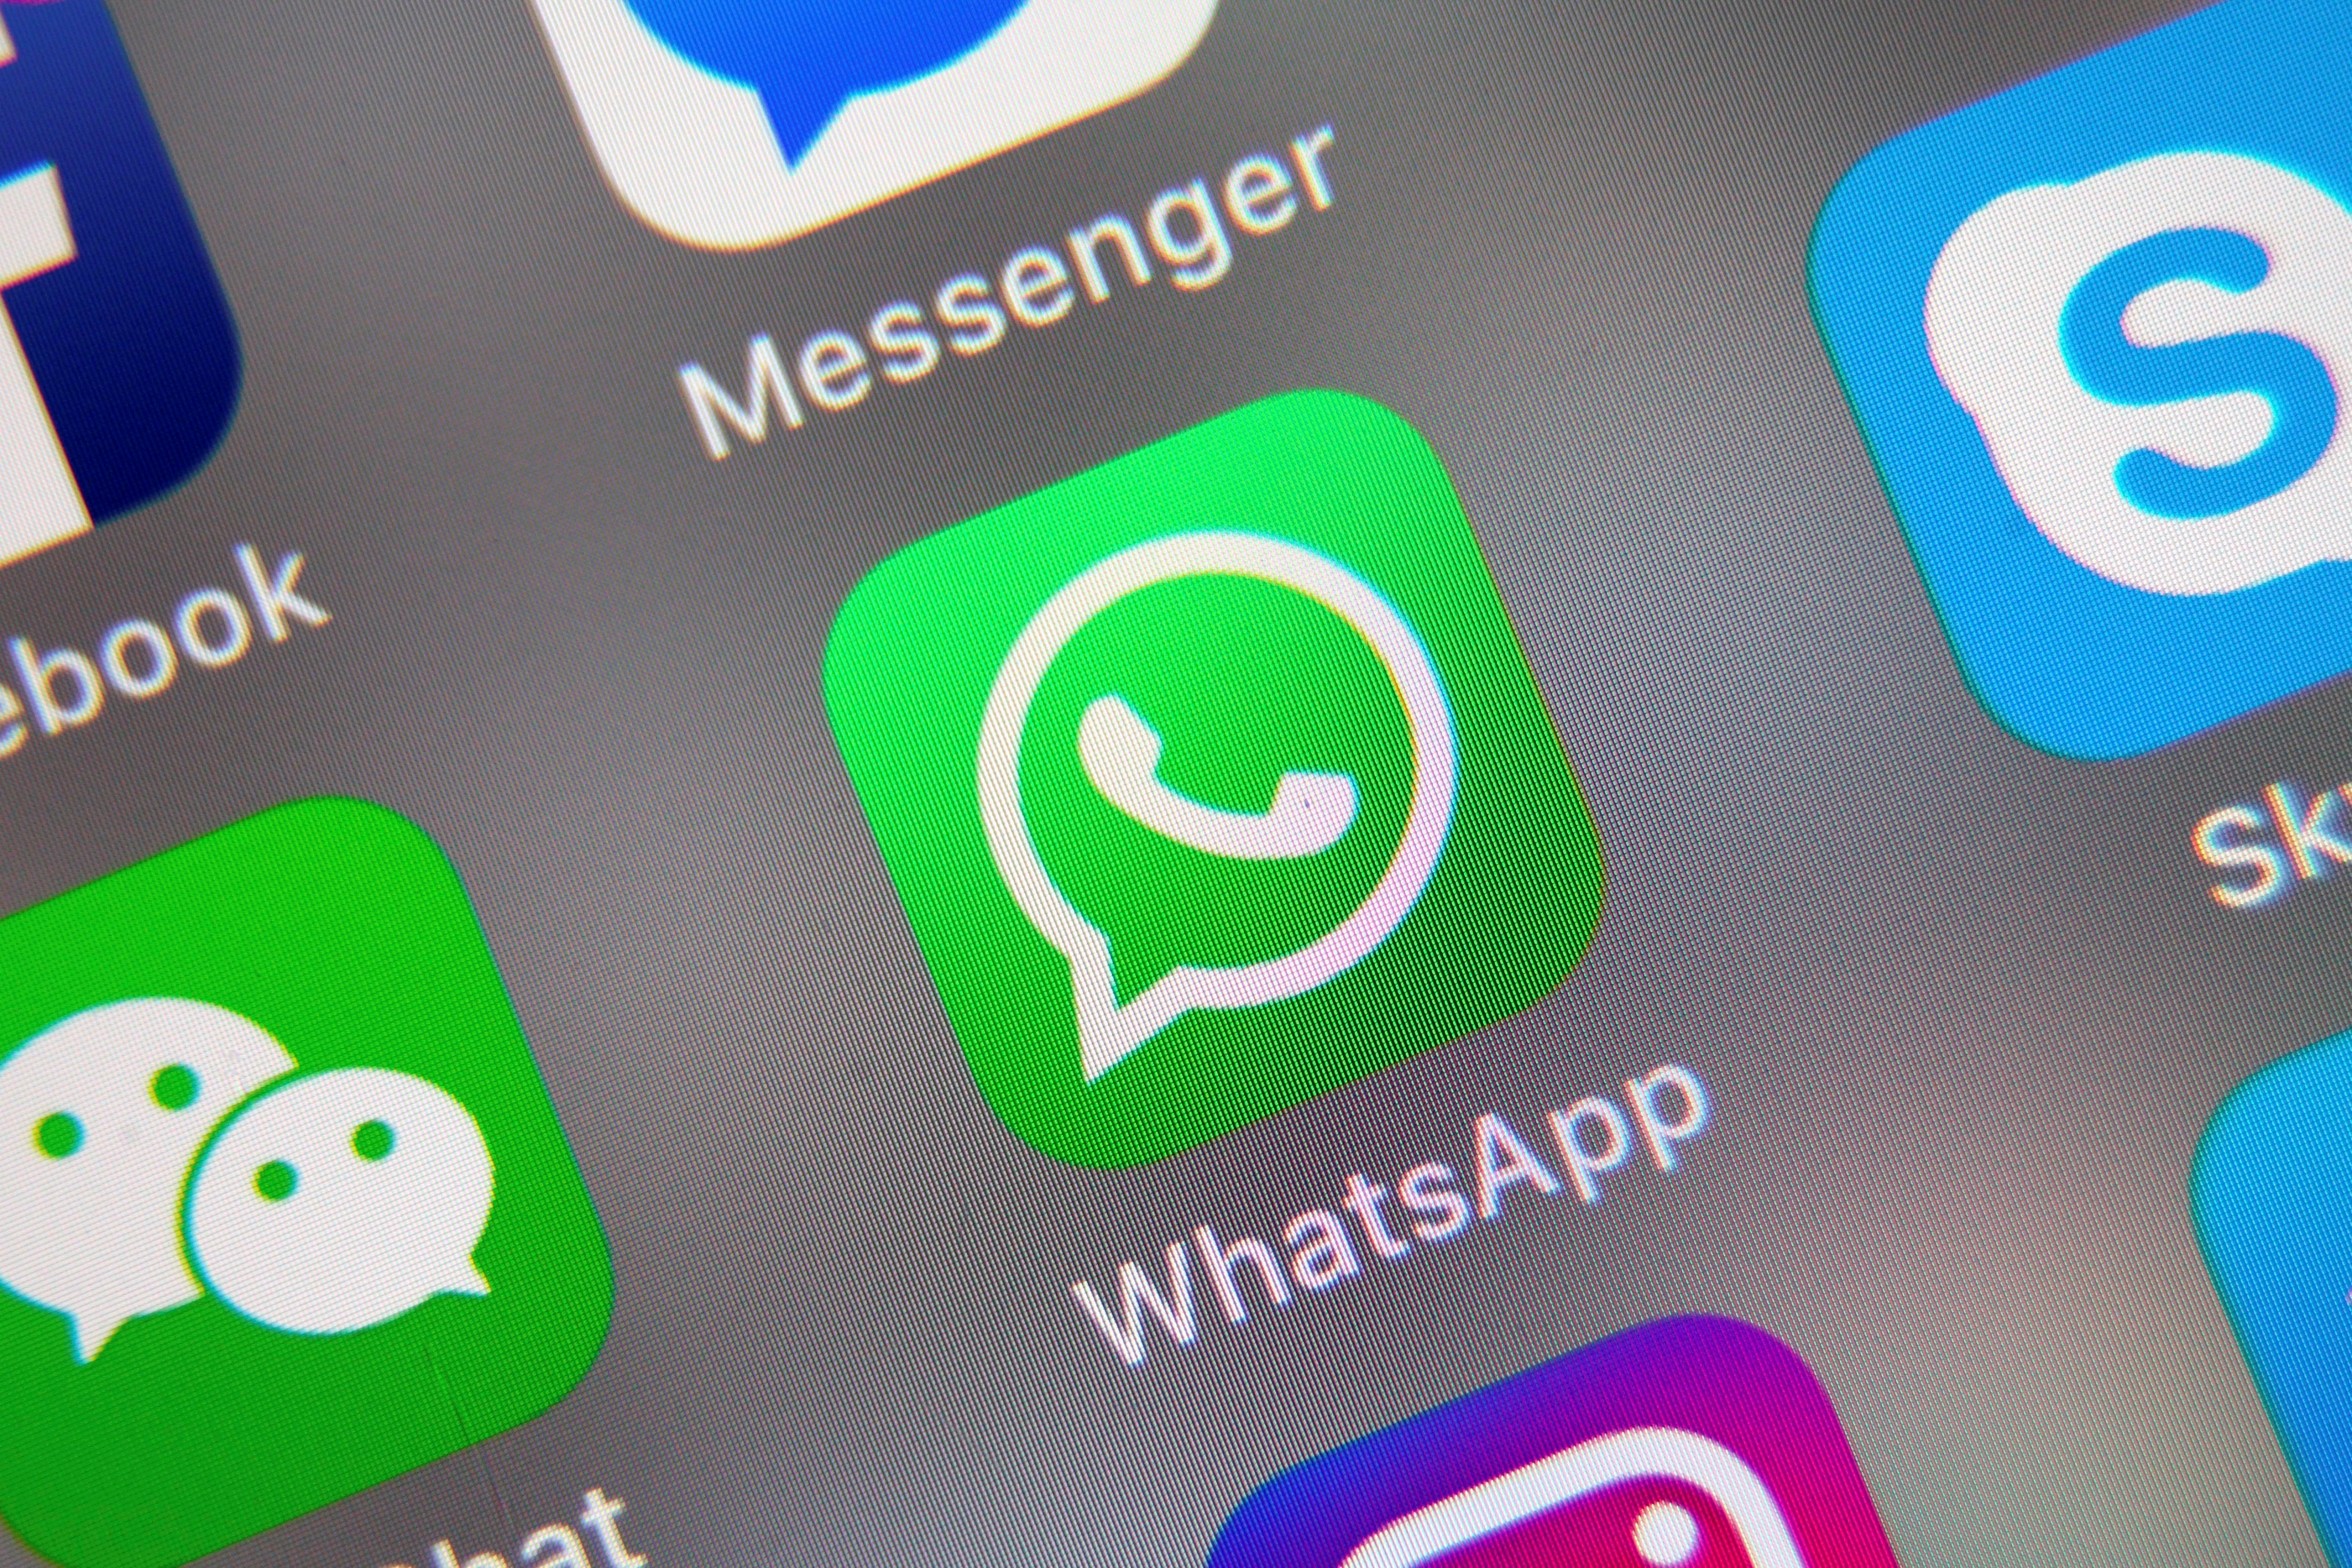 Según el Gobierno si el usuario no acepta las nuevas condiciones de WhatsApp, podría sufrir limitaciones de uso, hasta dejar de operar y perder todos los datos almacenados. (EFE/EPA/RITCHIE B. TONGO)